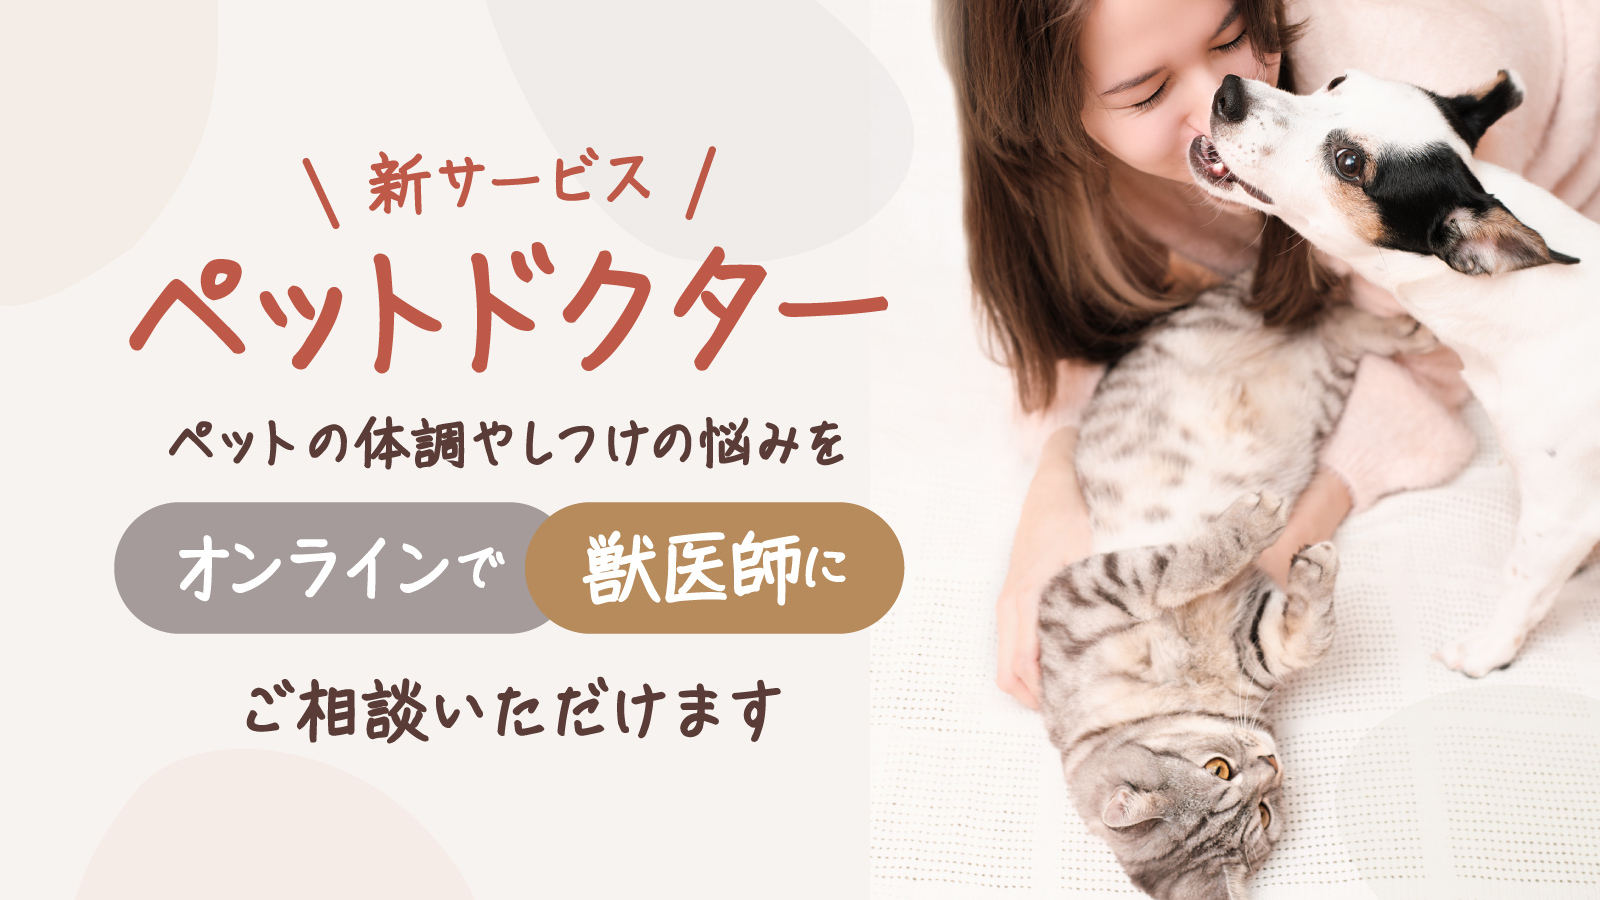 ぺットのオンライン相談サービス『ペットドクター』を本日11月22日